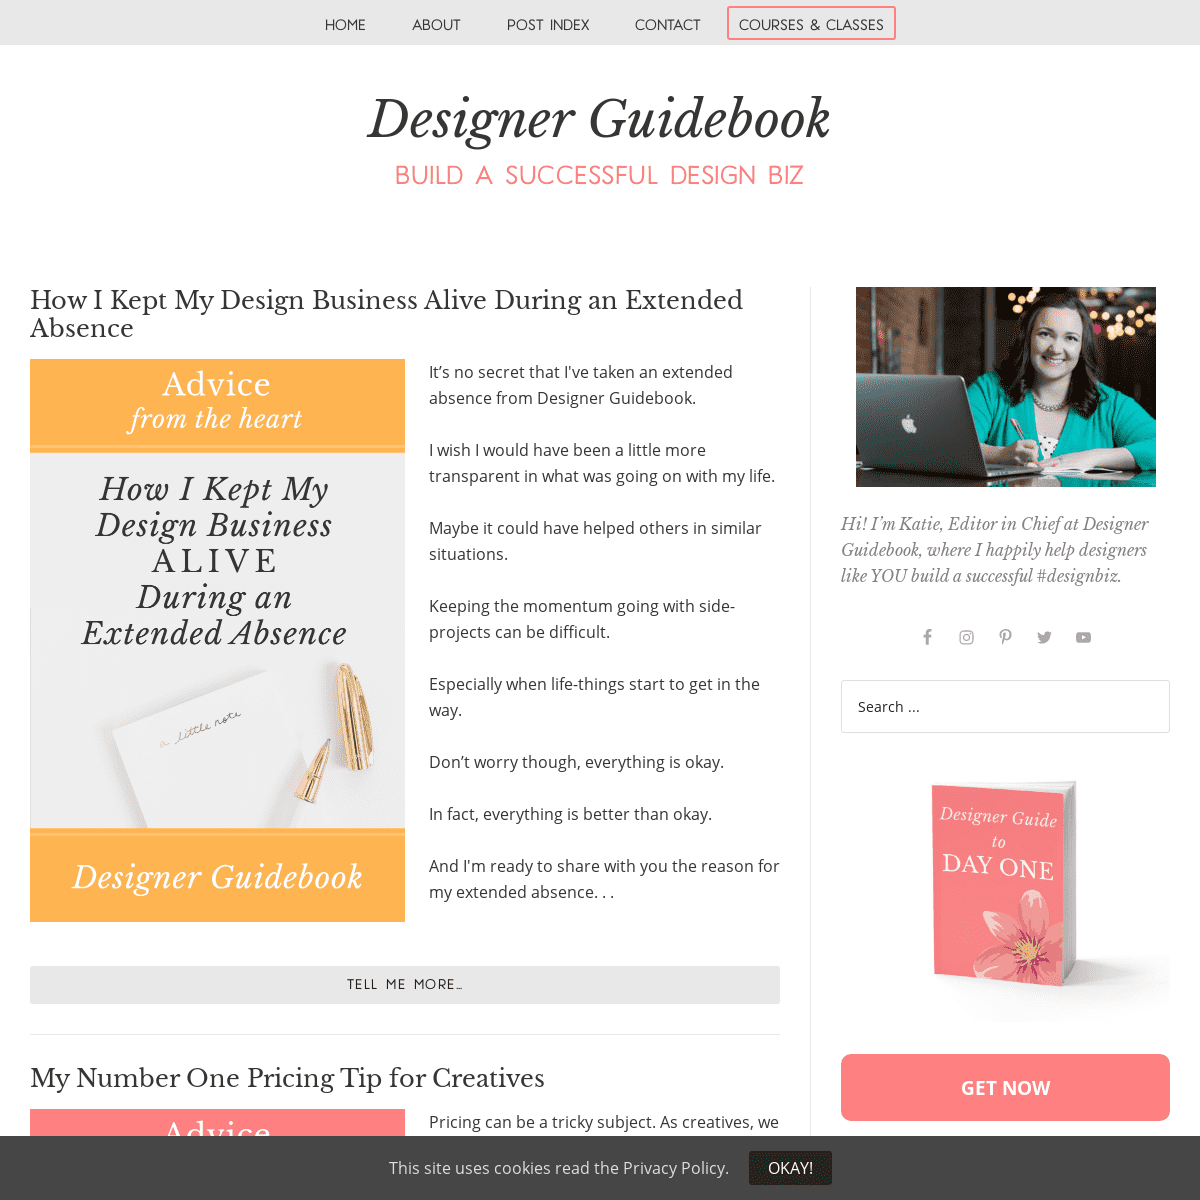 A complete backup of designerguidebook.com